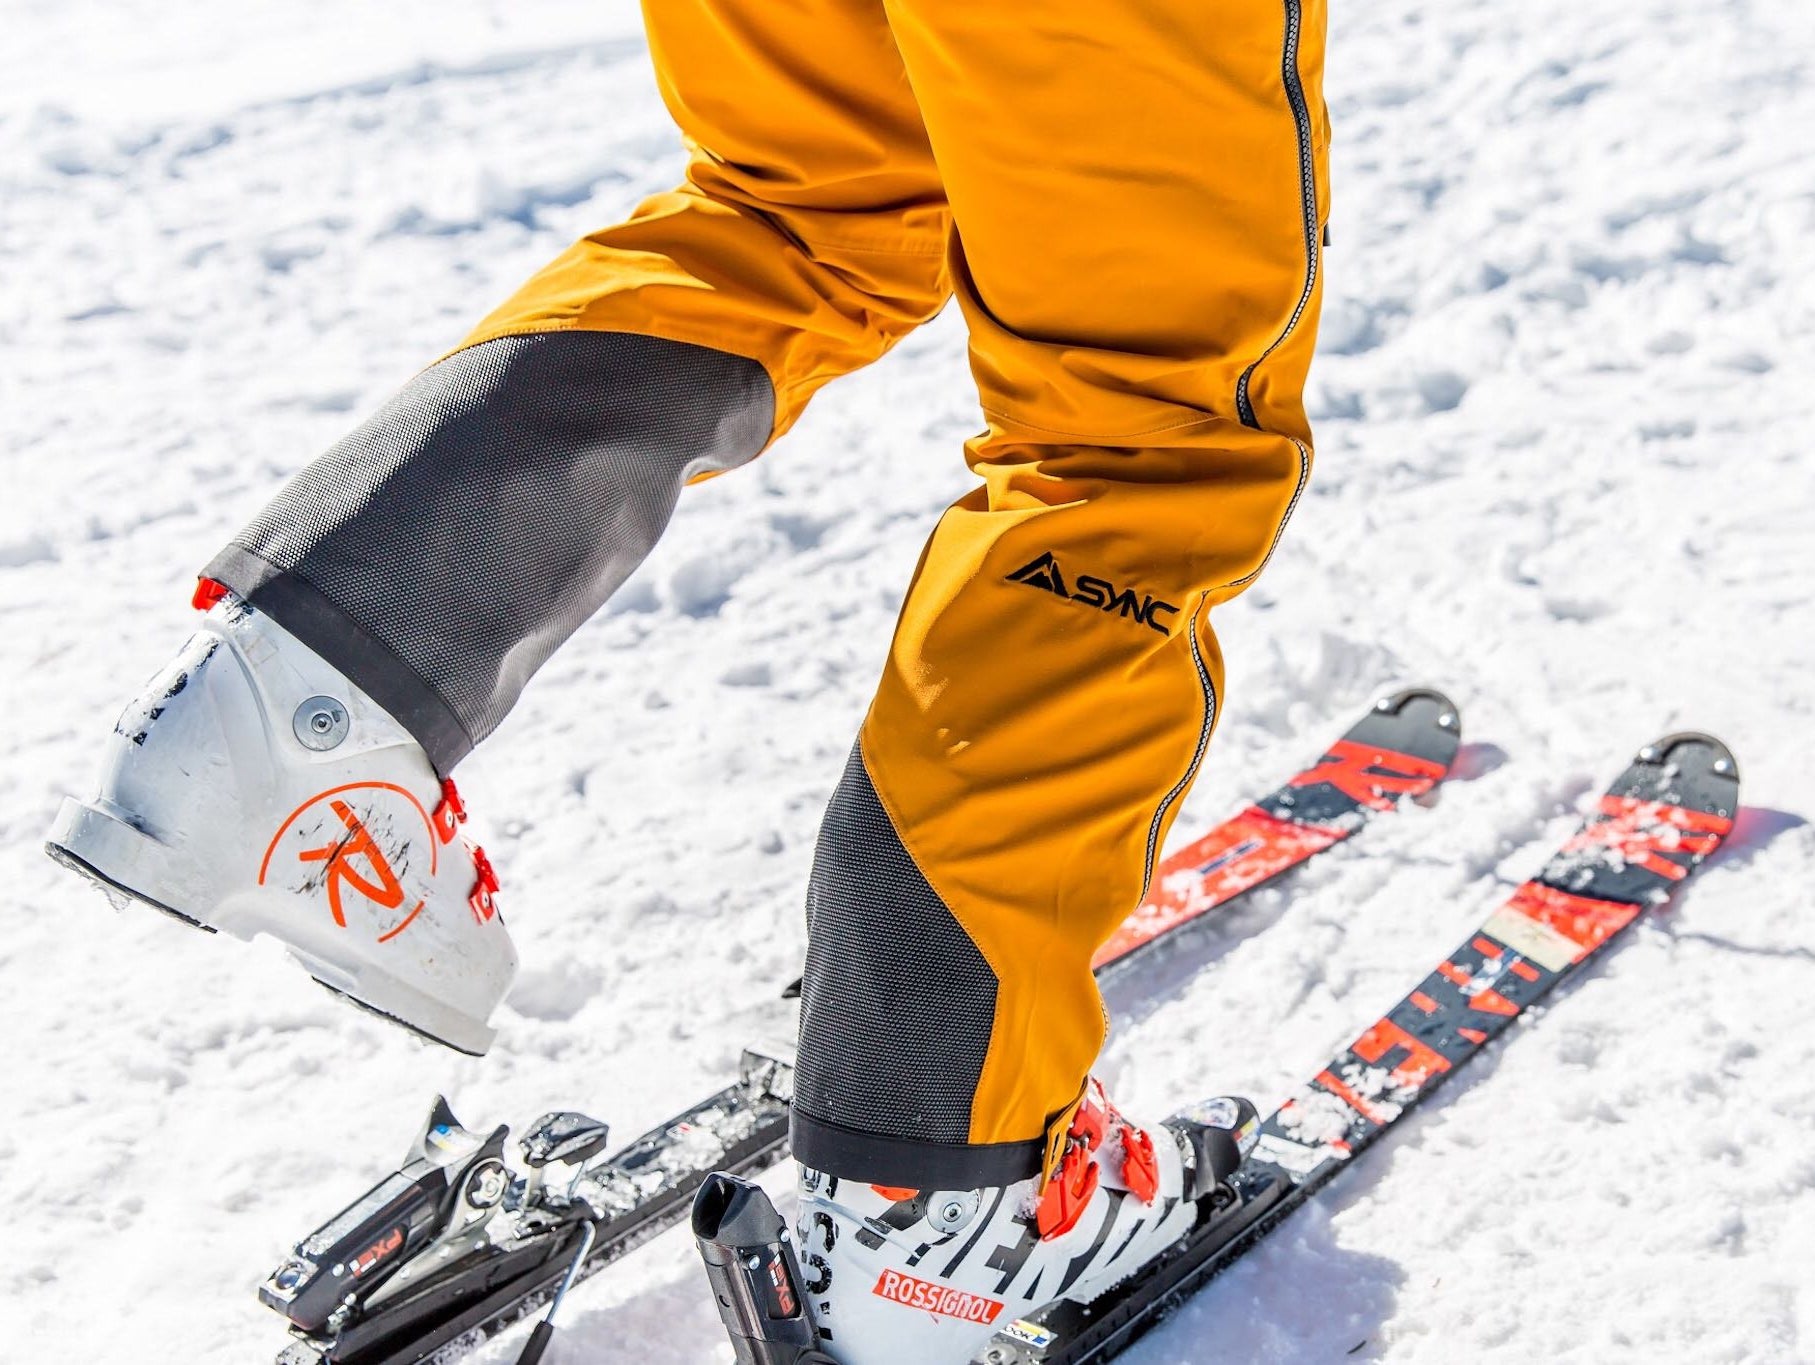 Pick The Perfect Pant: 8120 Ski Pants vs. Top Step Ski Pants